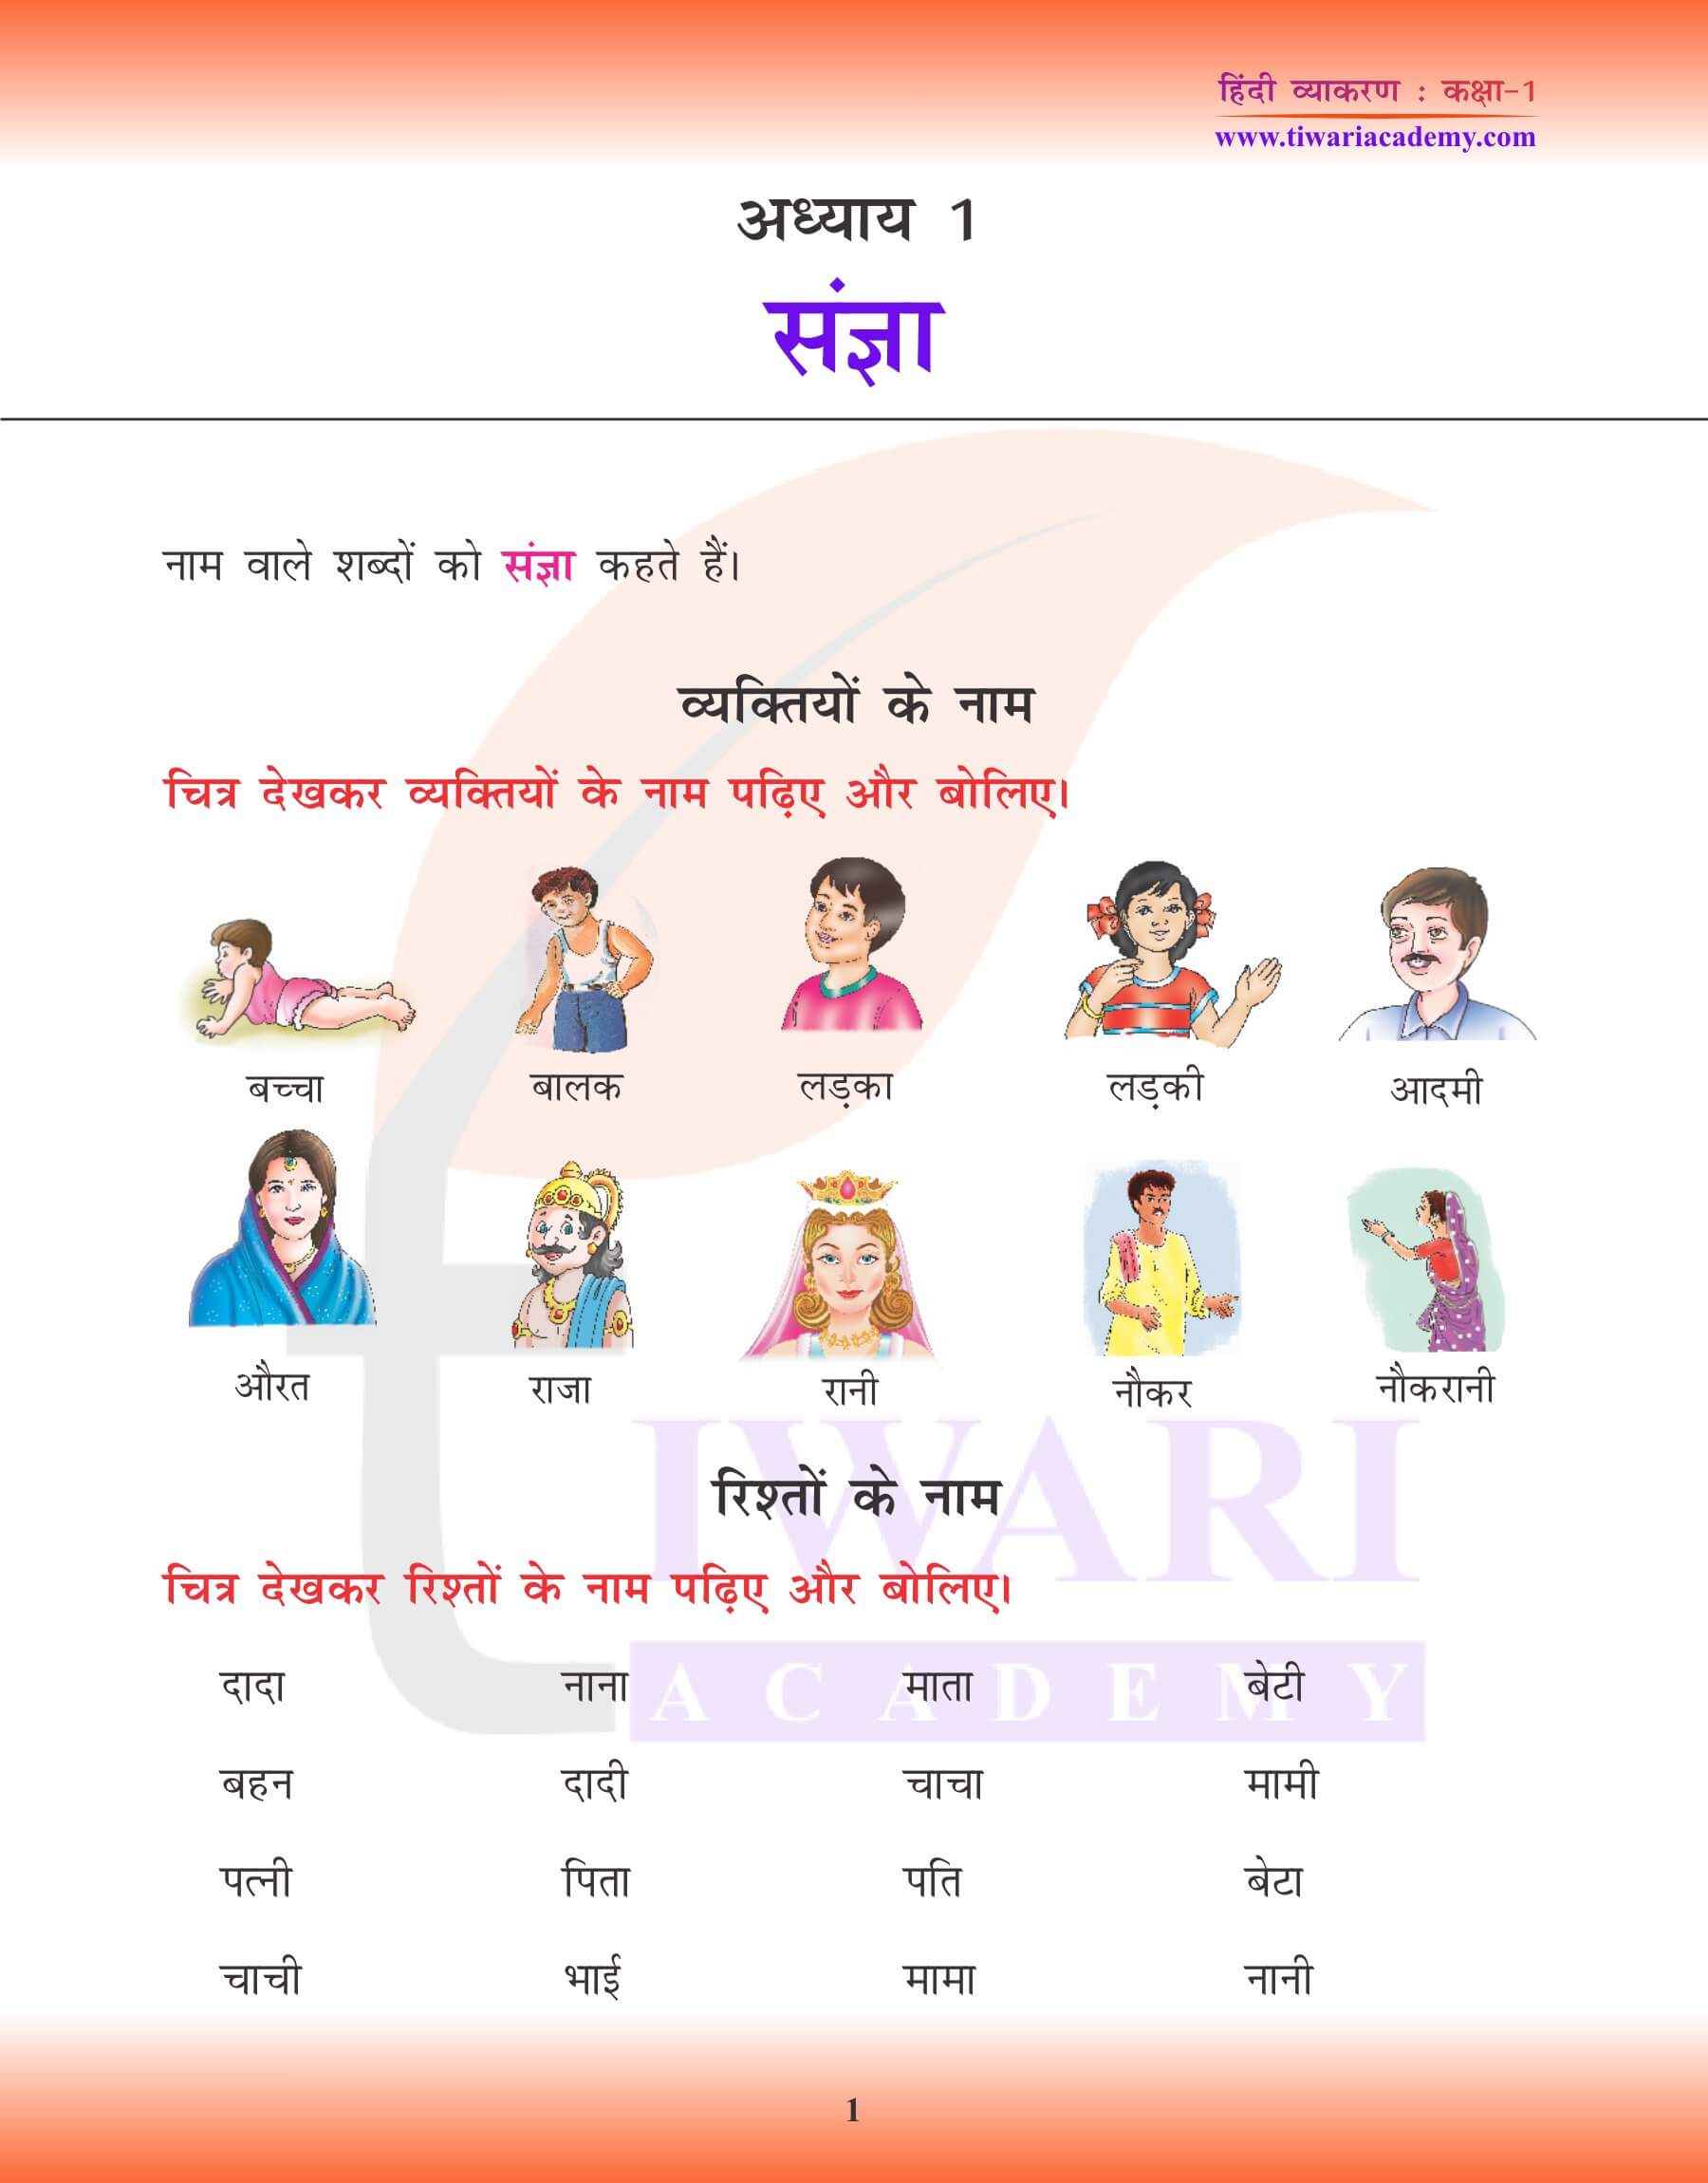 कक्षा 1 हिंदी व्याकरण अध्याय 1 के लिए एनसीईआरटी समाधान नाम वाले शब्द – संज्ञा